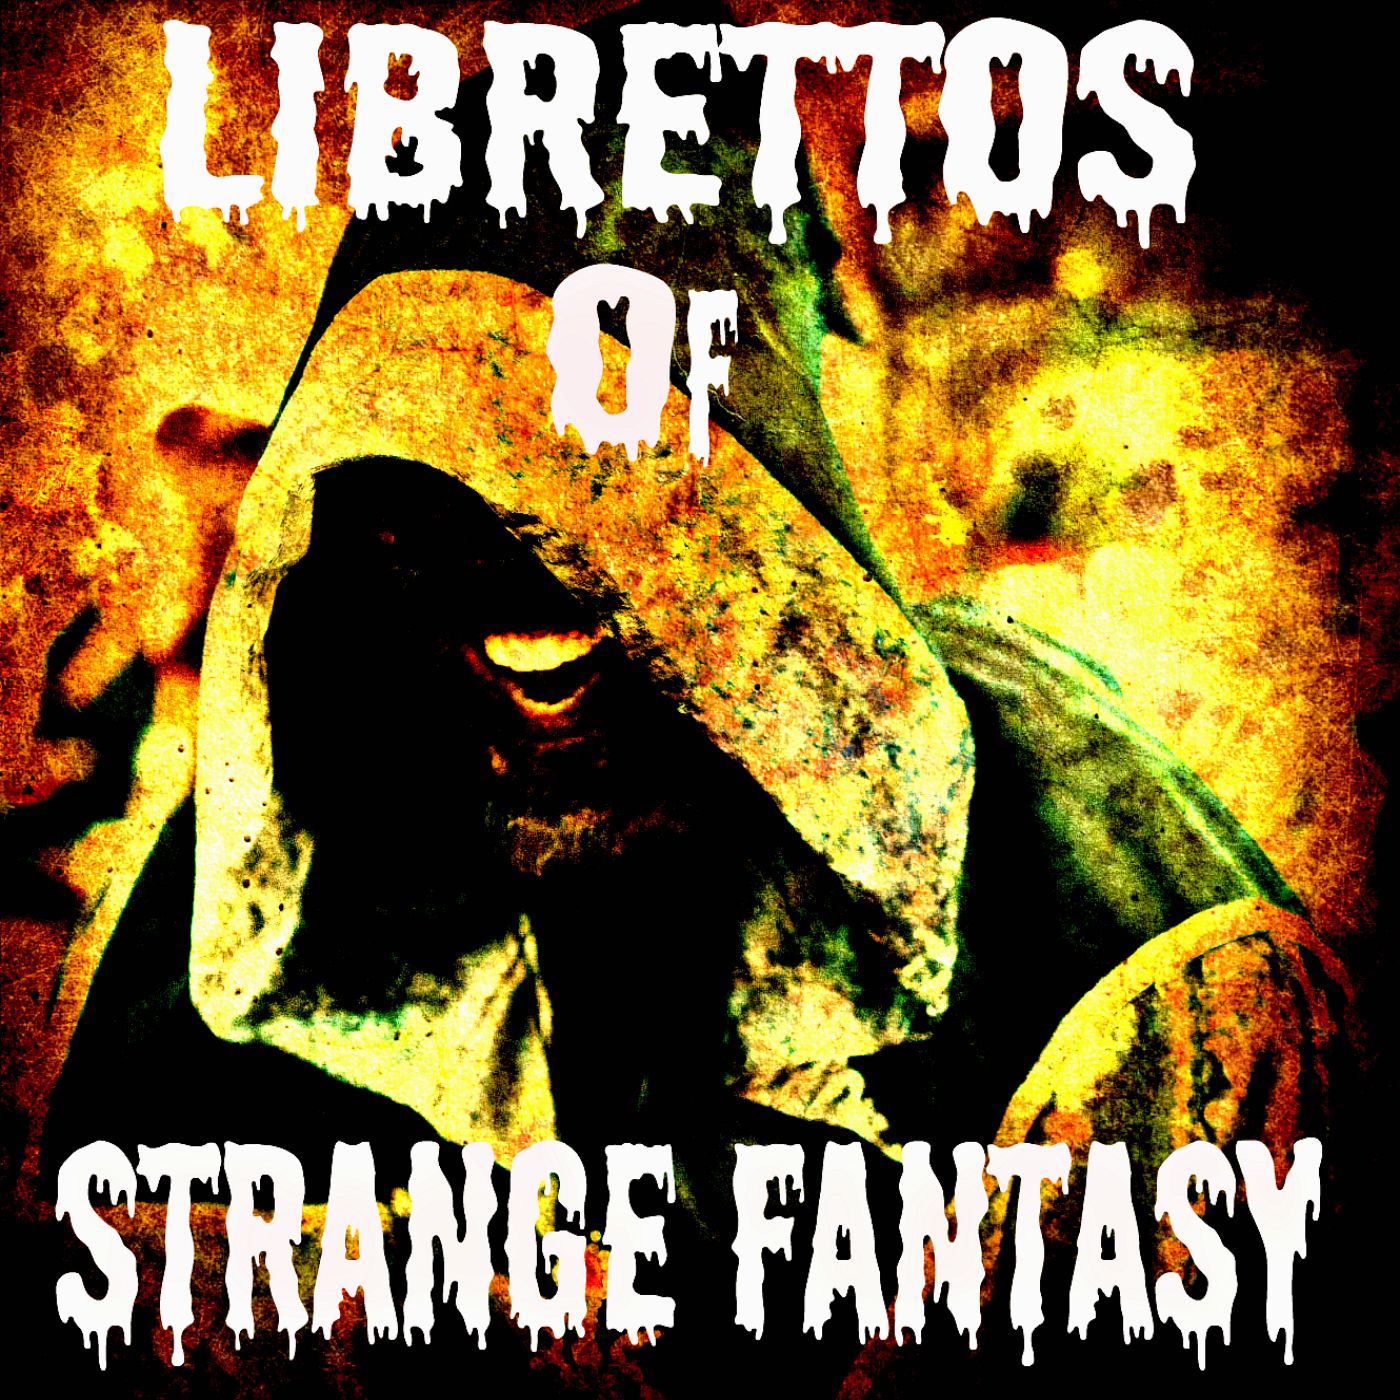 Librettos of Strange Fantasy